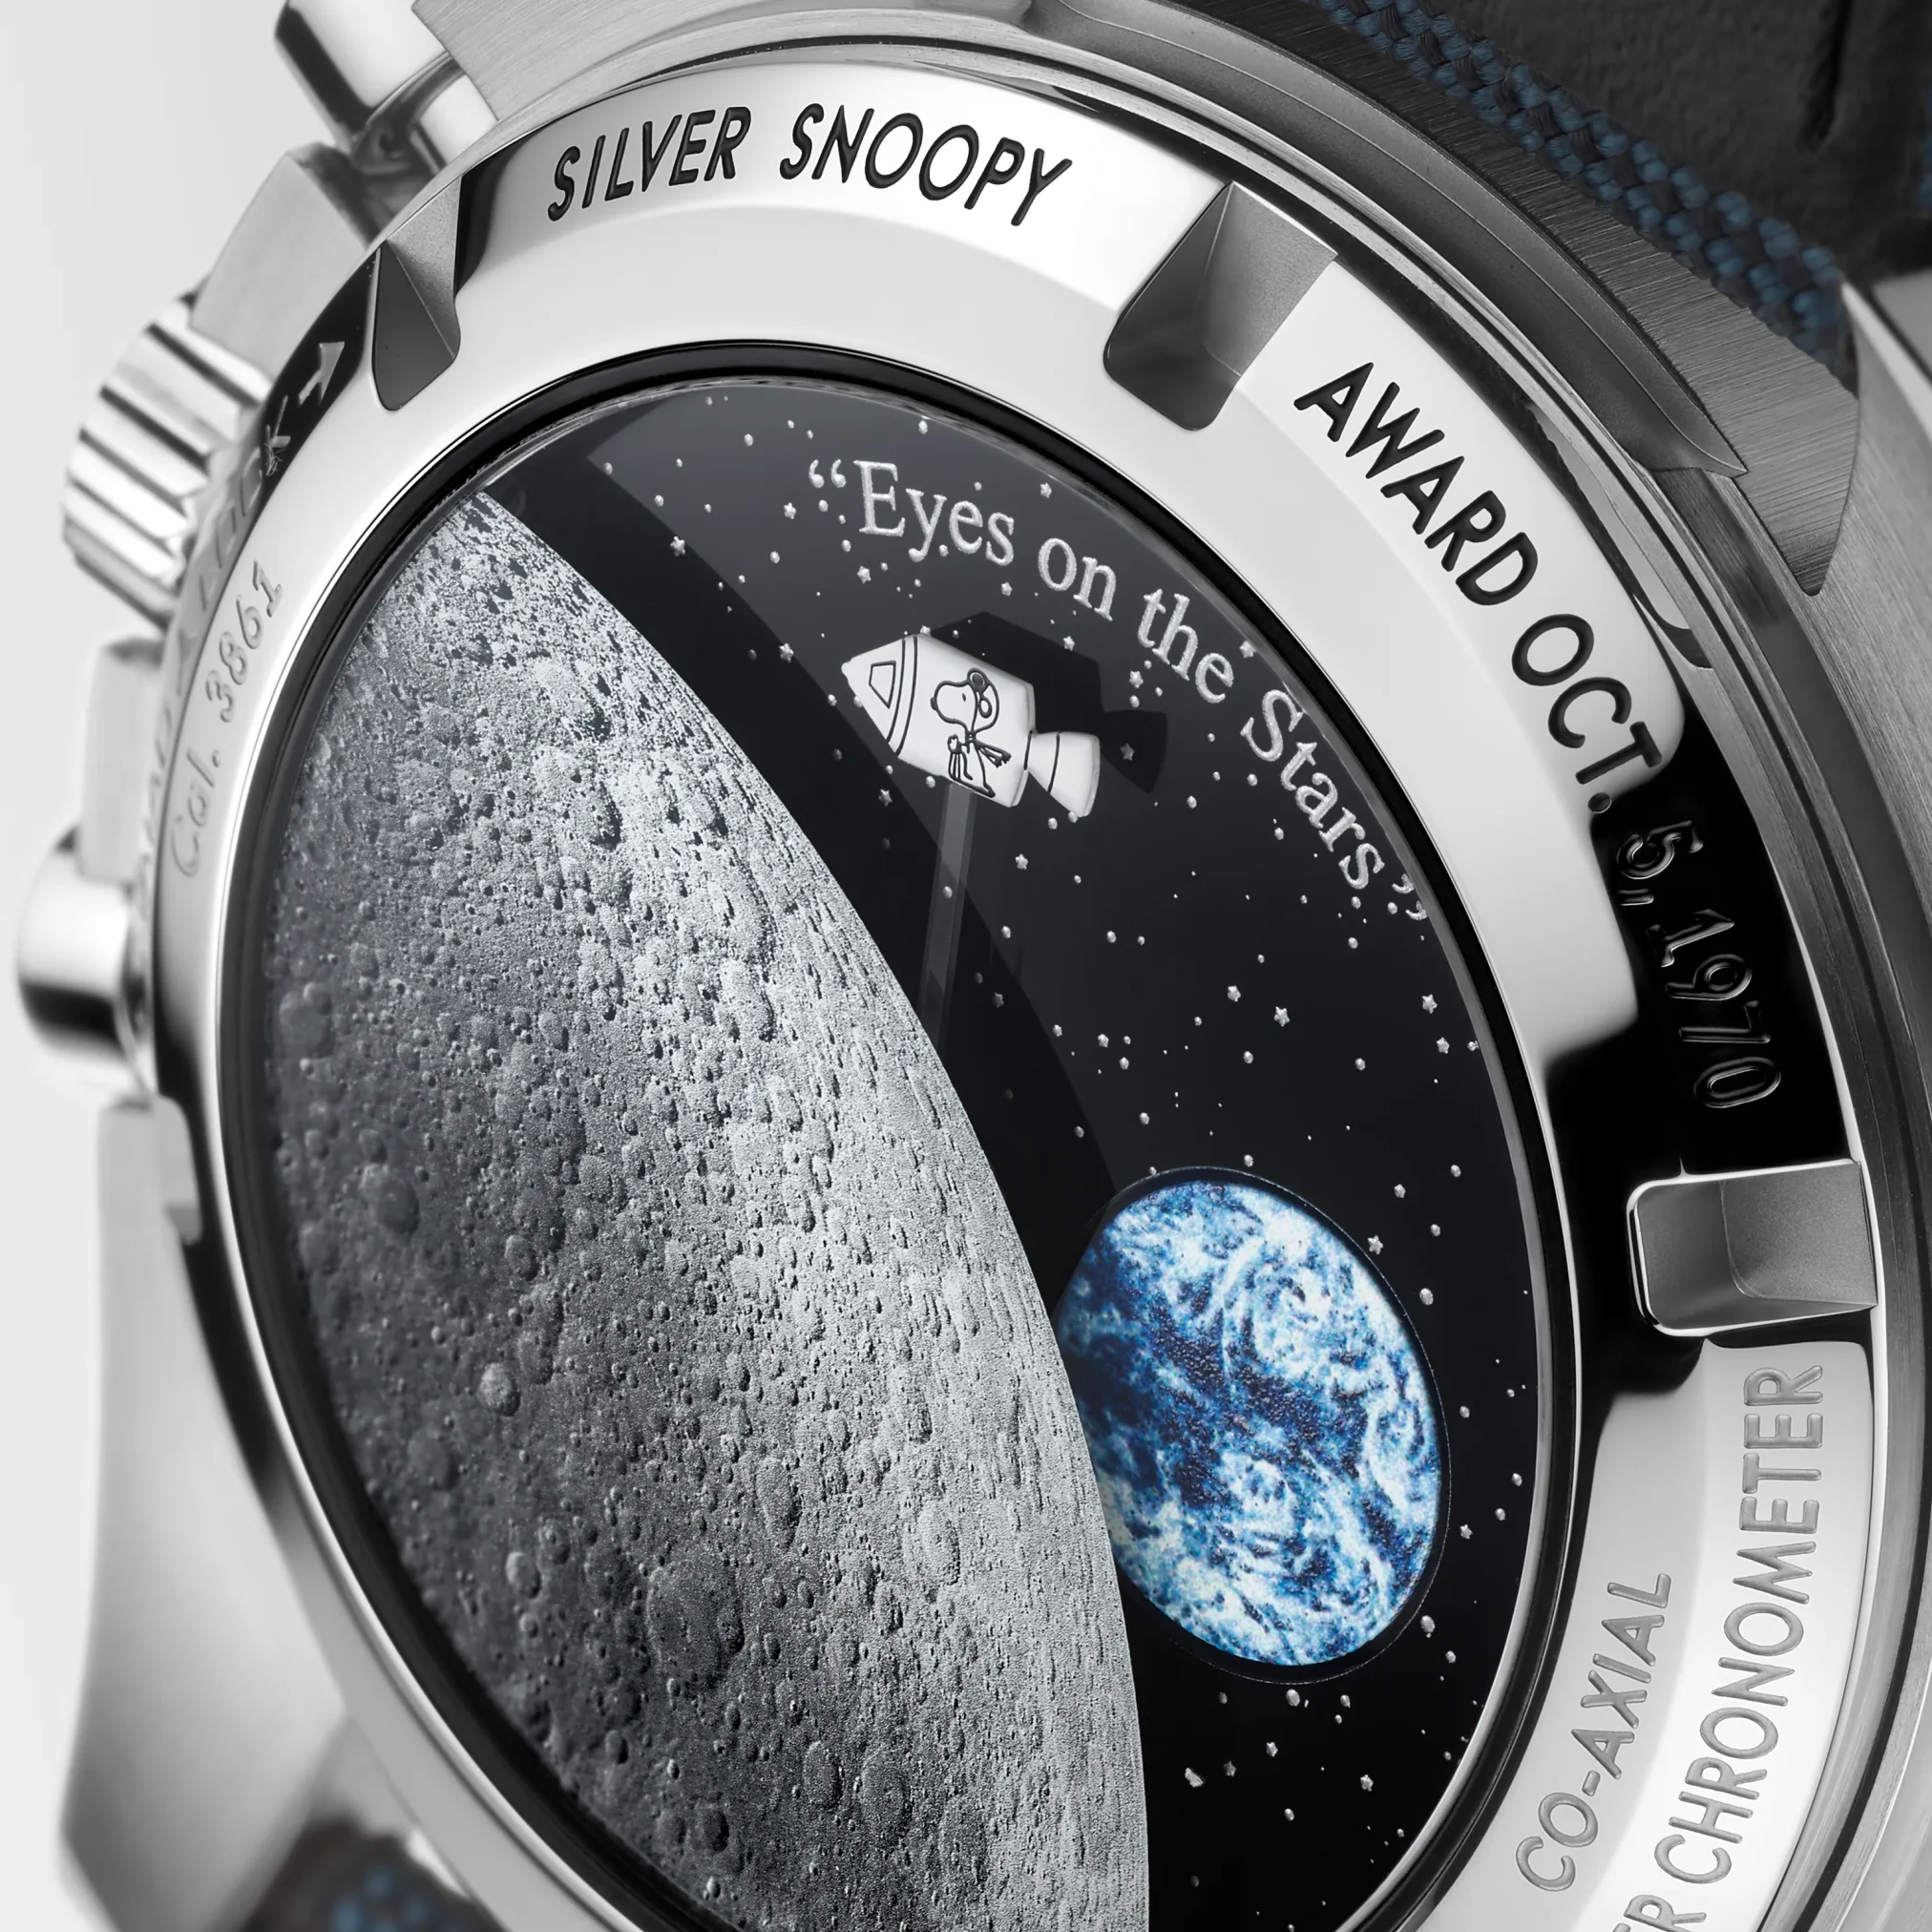 Đồng hồ Omega Speedmaster Anniversary Series "Silver Snoopy Award" Limited Edition 310.32.42.50.02.001 mặt số màu trắng xanh. Dây đeo bằng vải dù. Thân vỏ bằng thép.